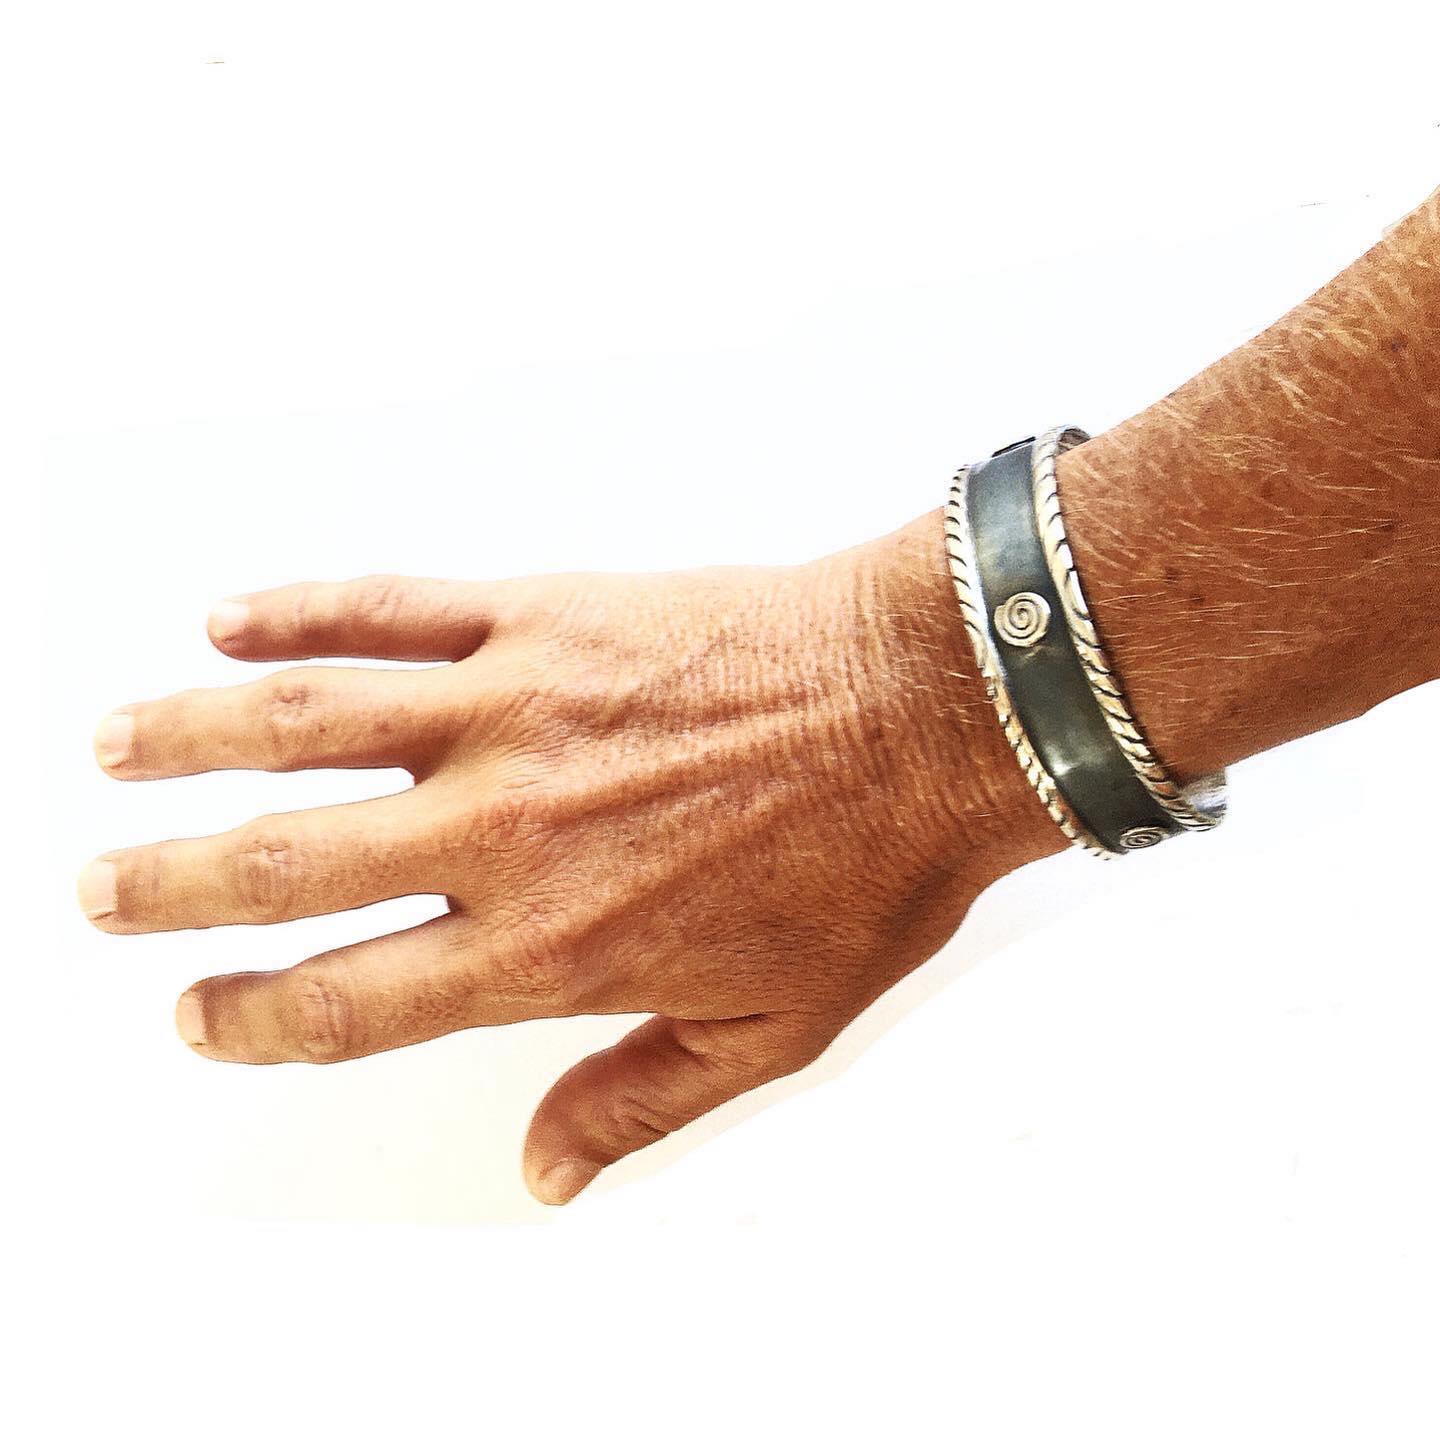 Handmade Sterling Silver925 bracelet